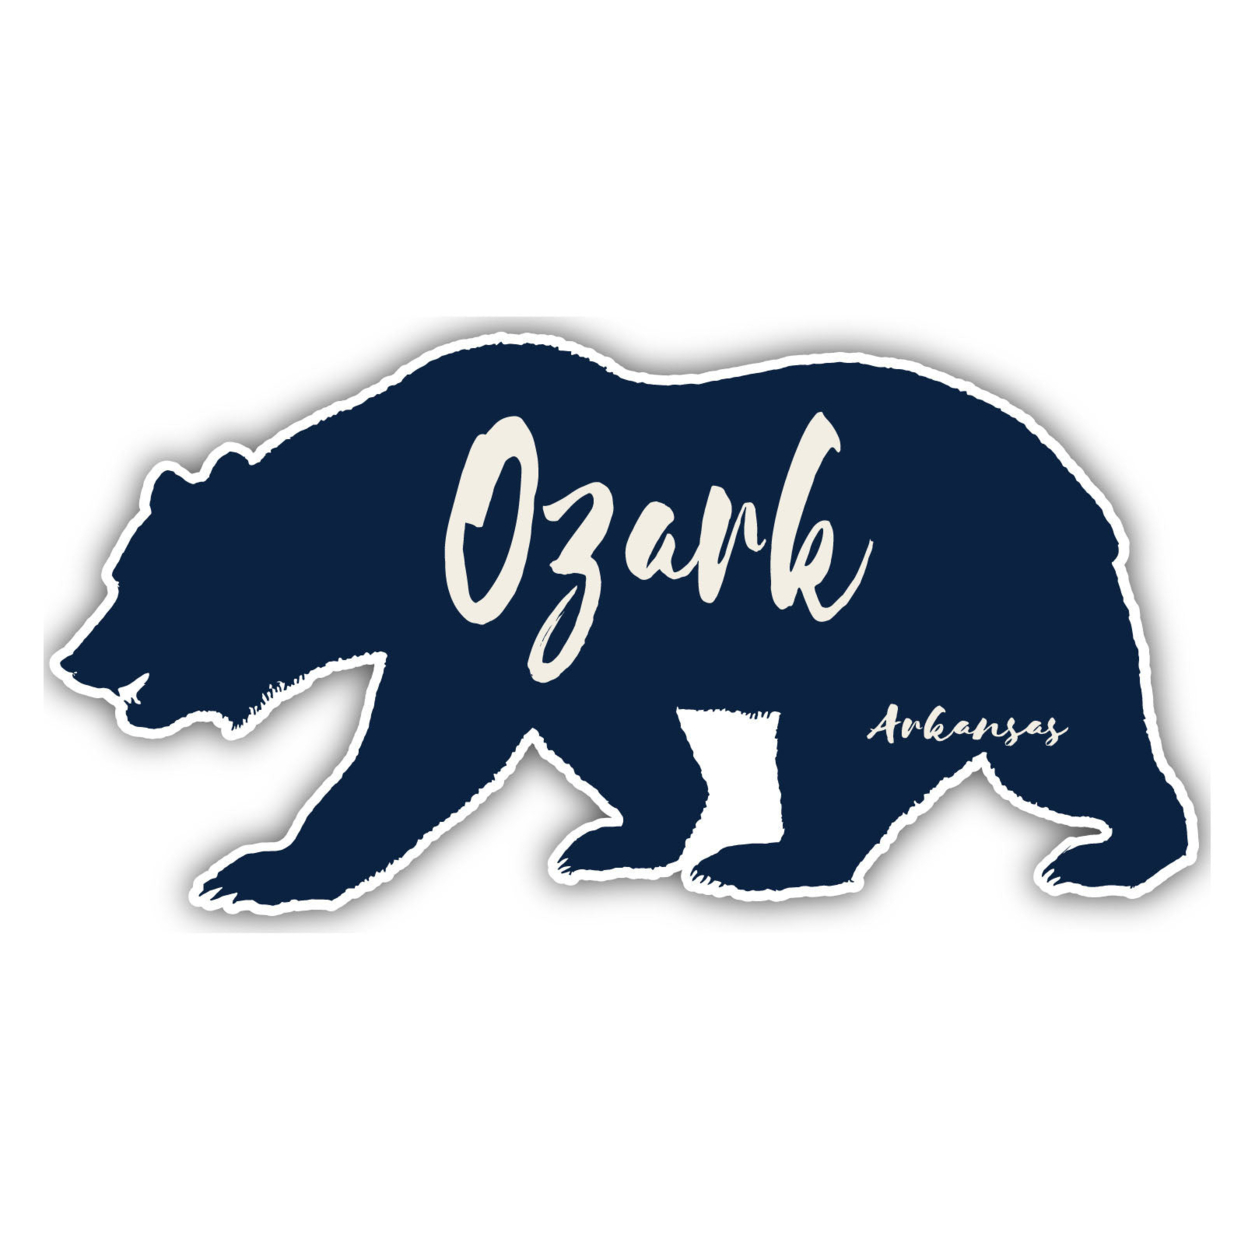 Ozark Arkansas Souvenir Decorative Stickers (Choose Theme And Size) - Single Unit, 4-Inch, Tent